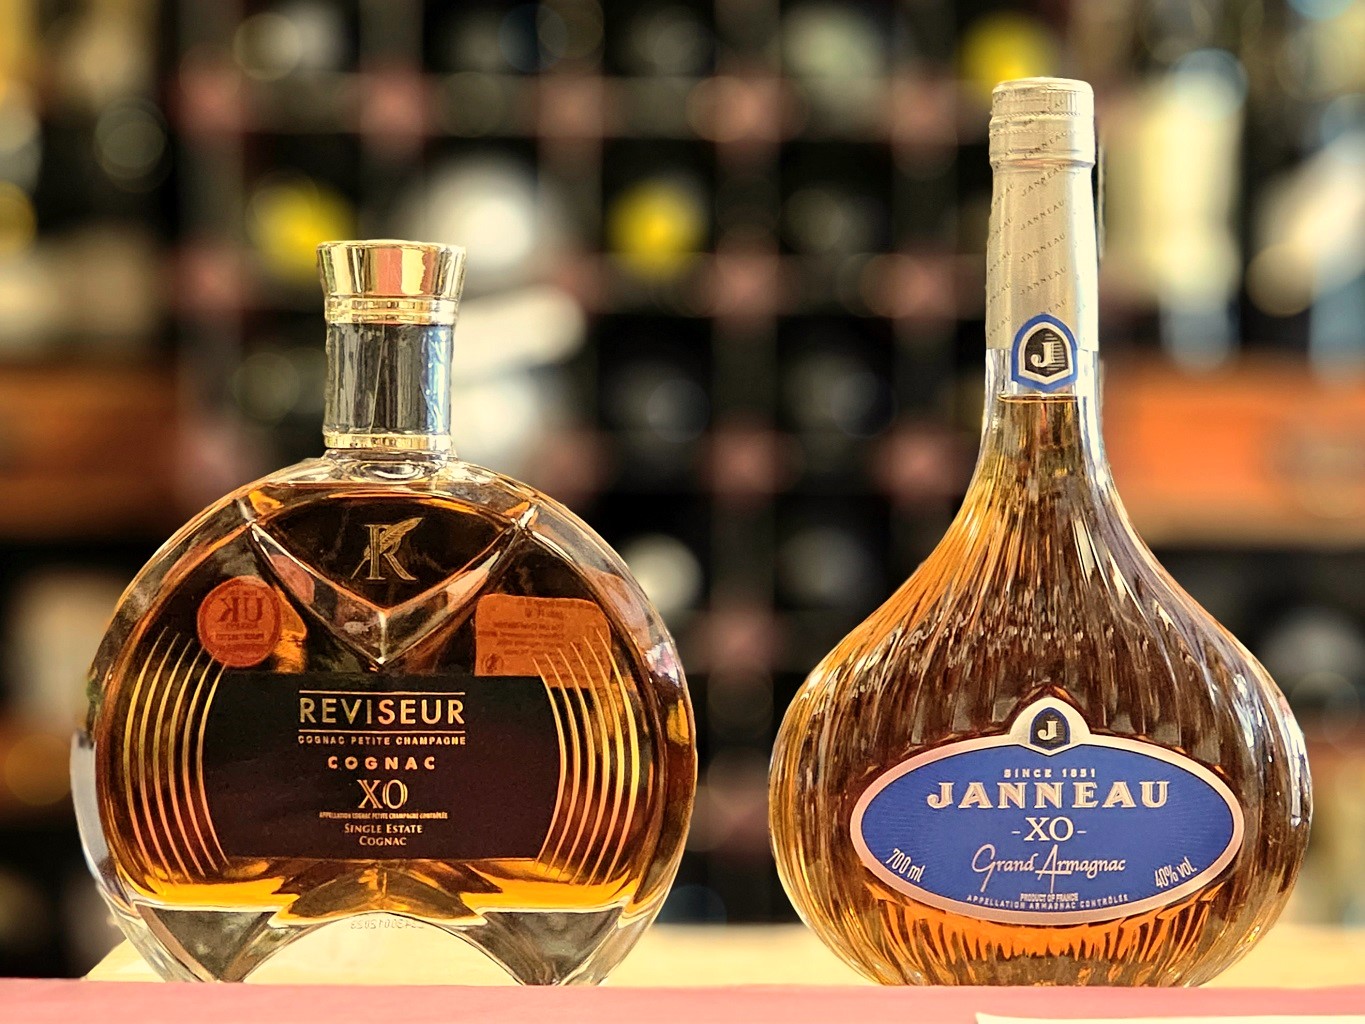 Bottles of XO Cognac and Armagnac, Le Reviseur and Janneau